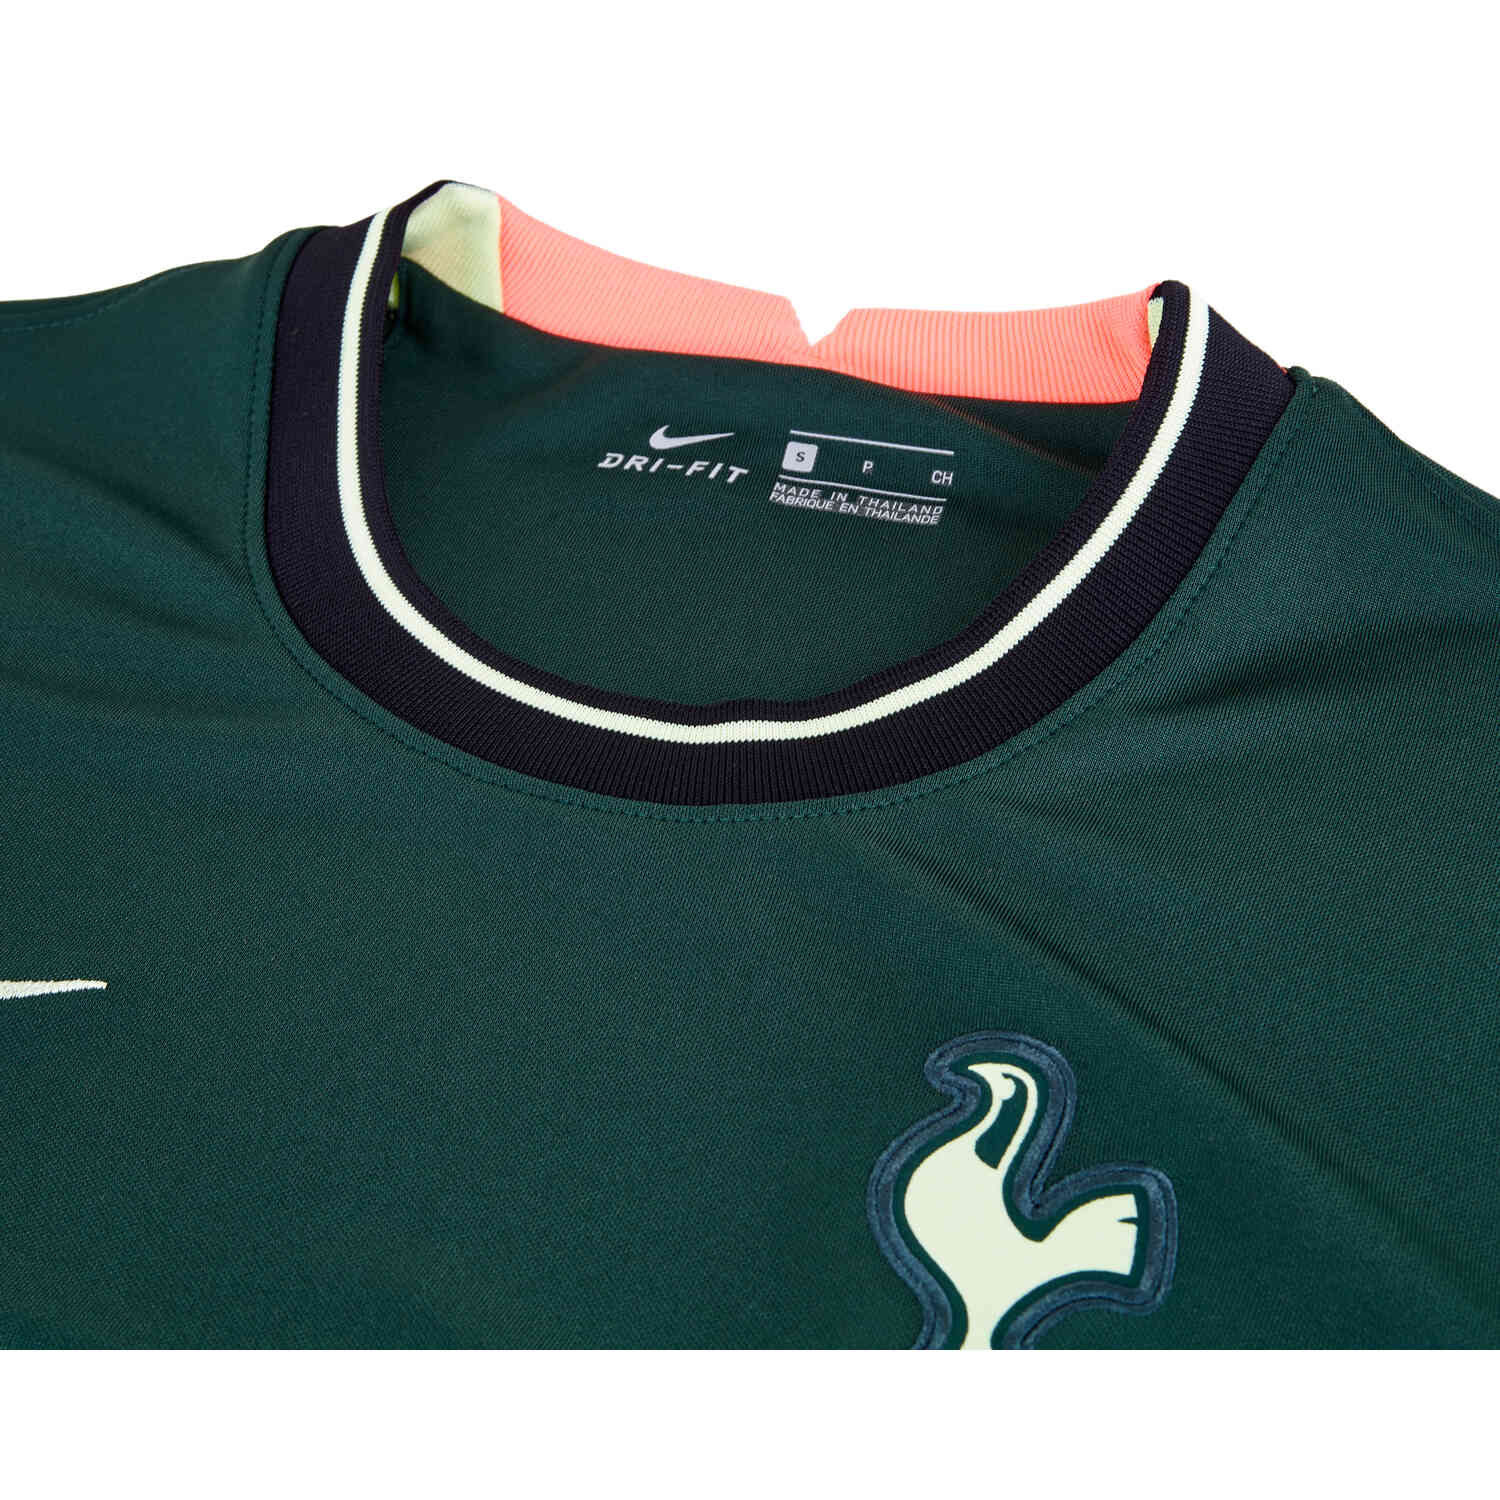 2020/21 Kids Nike Lucas Moura Tottenham Away Jersey - SoccerPro